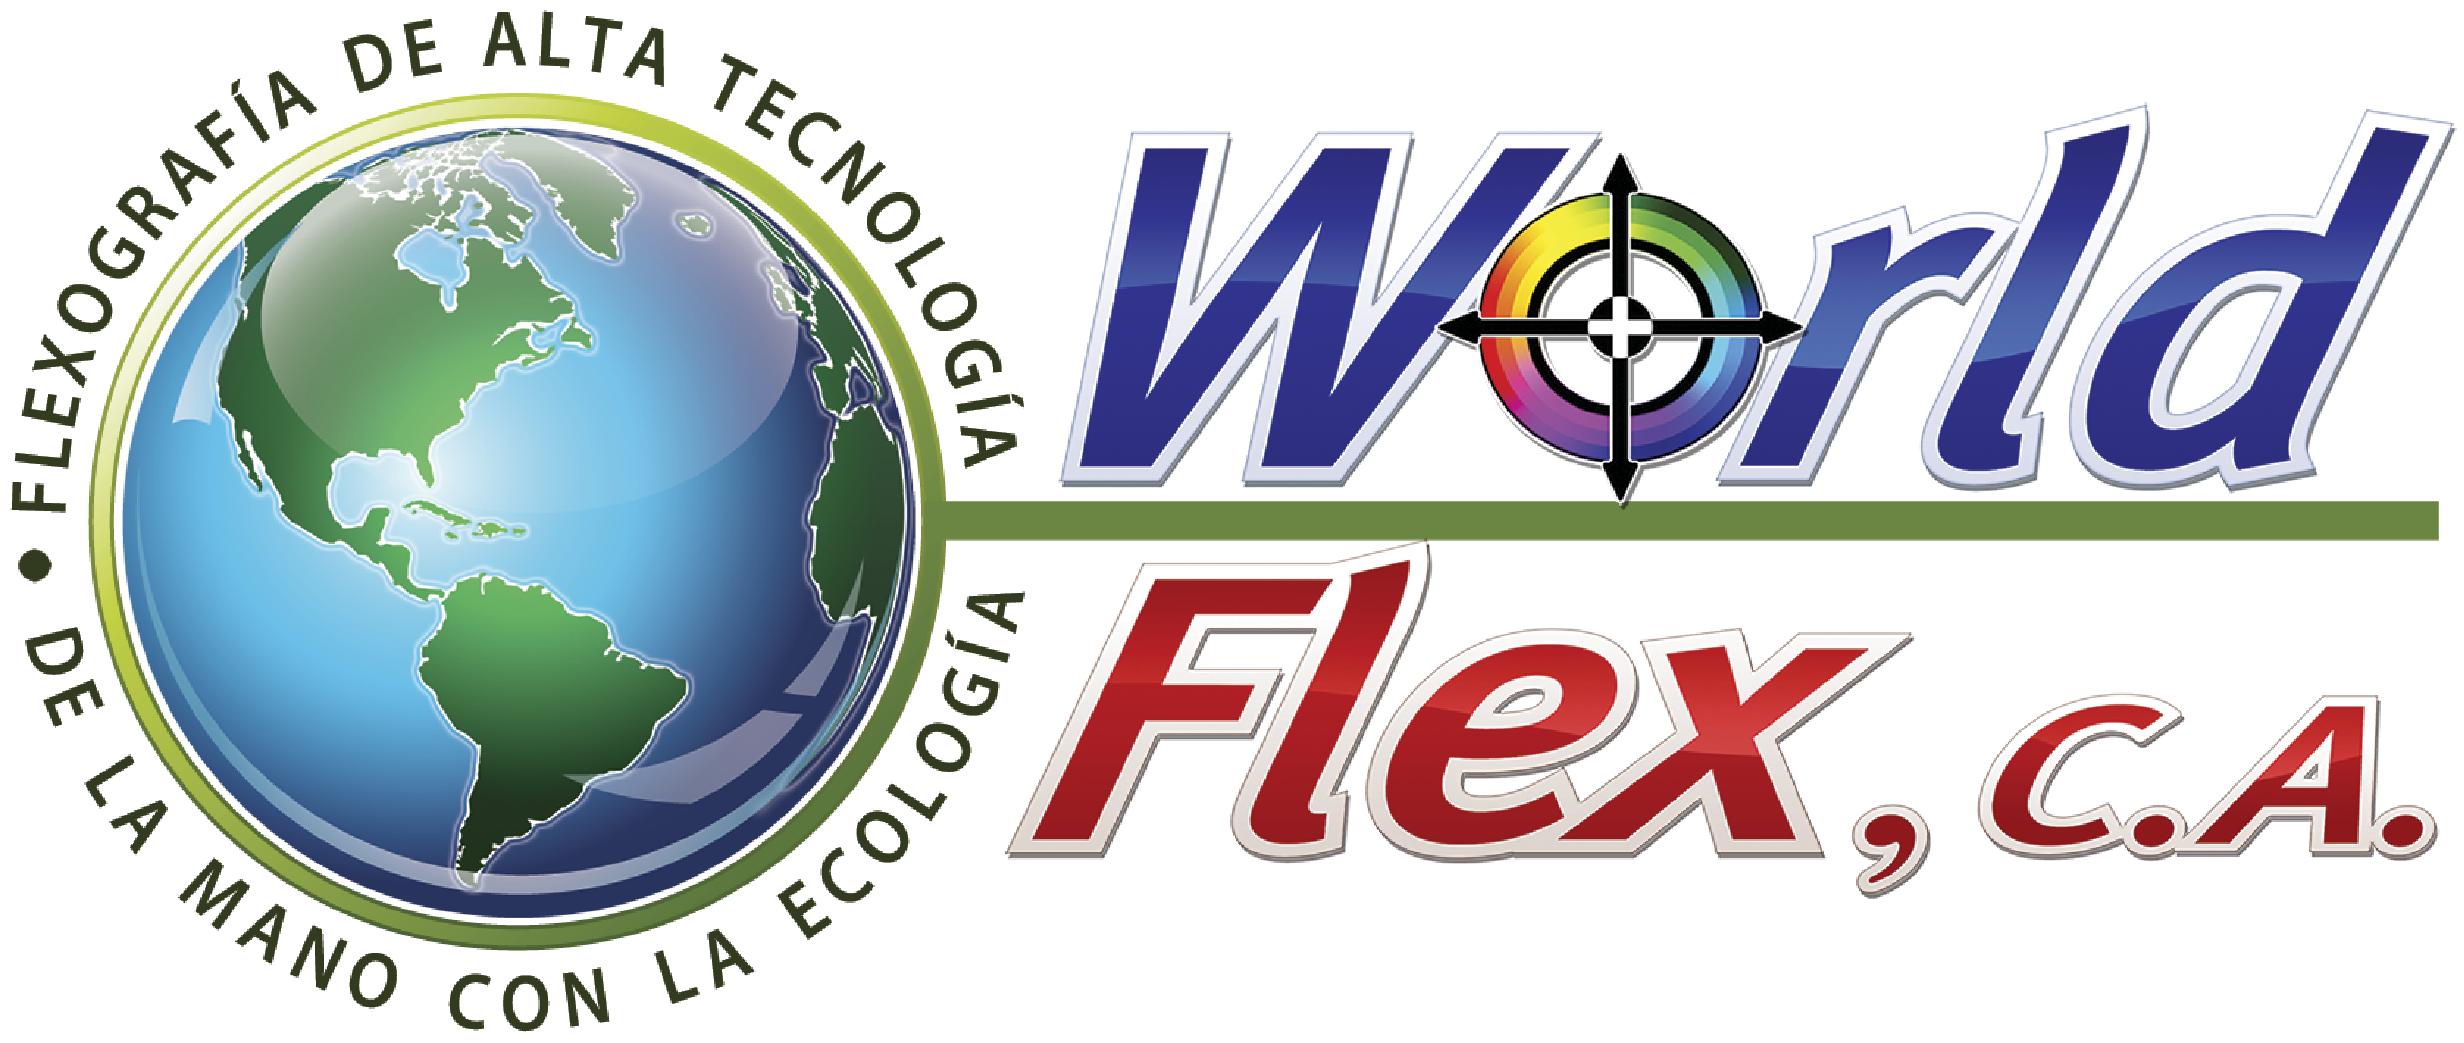 WORLDFLEXCA.COM